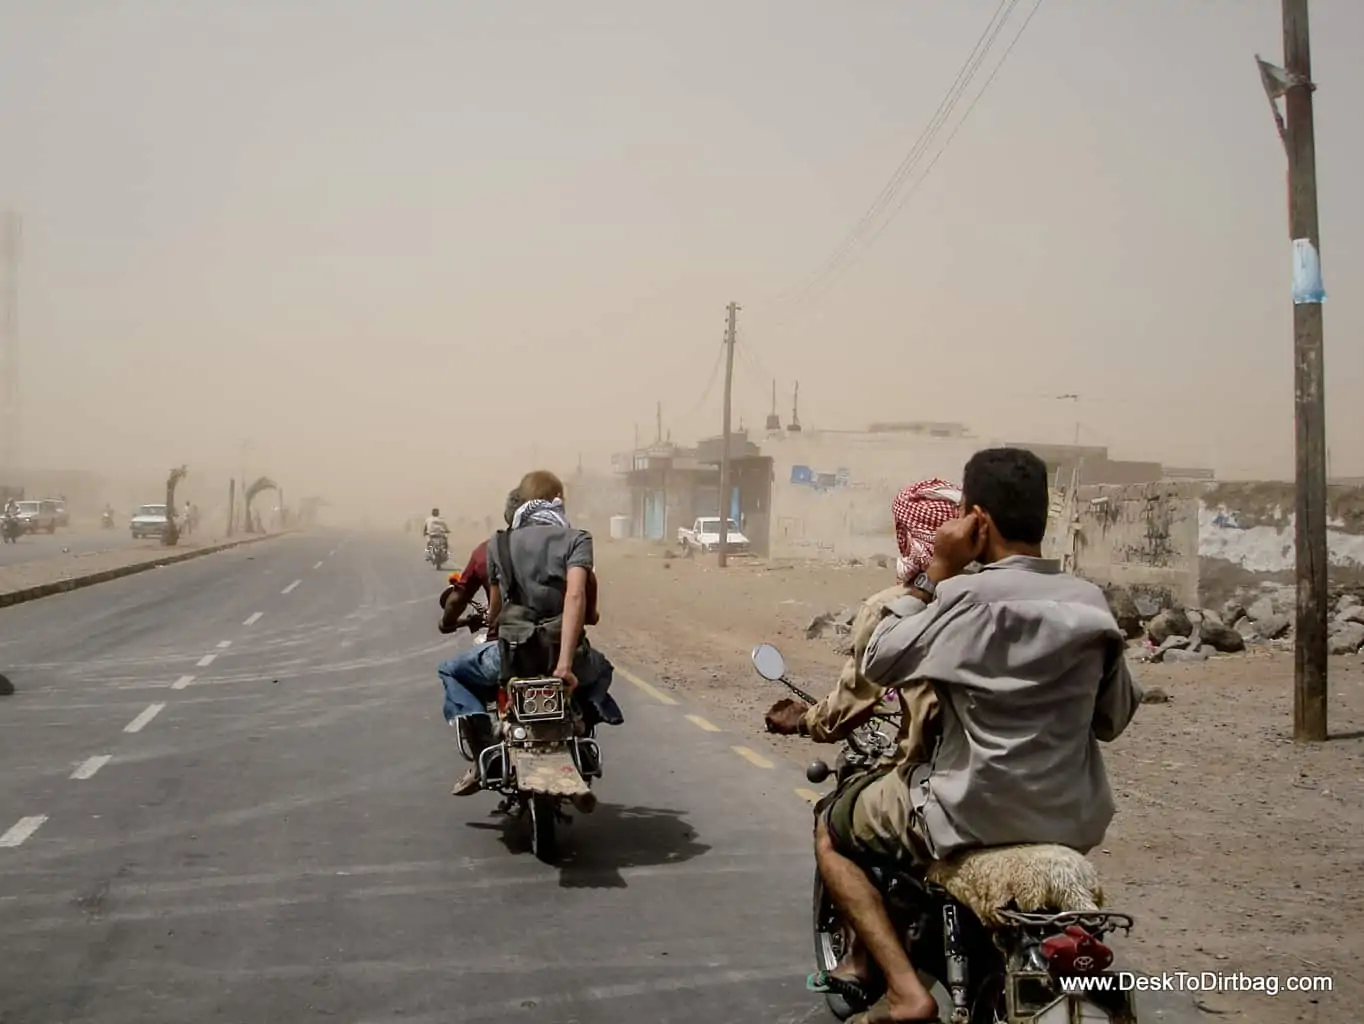 Riding into a sandstorm by motorbike in Mocha, Yemen.